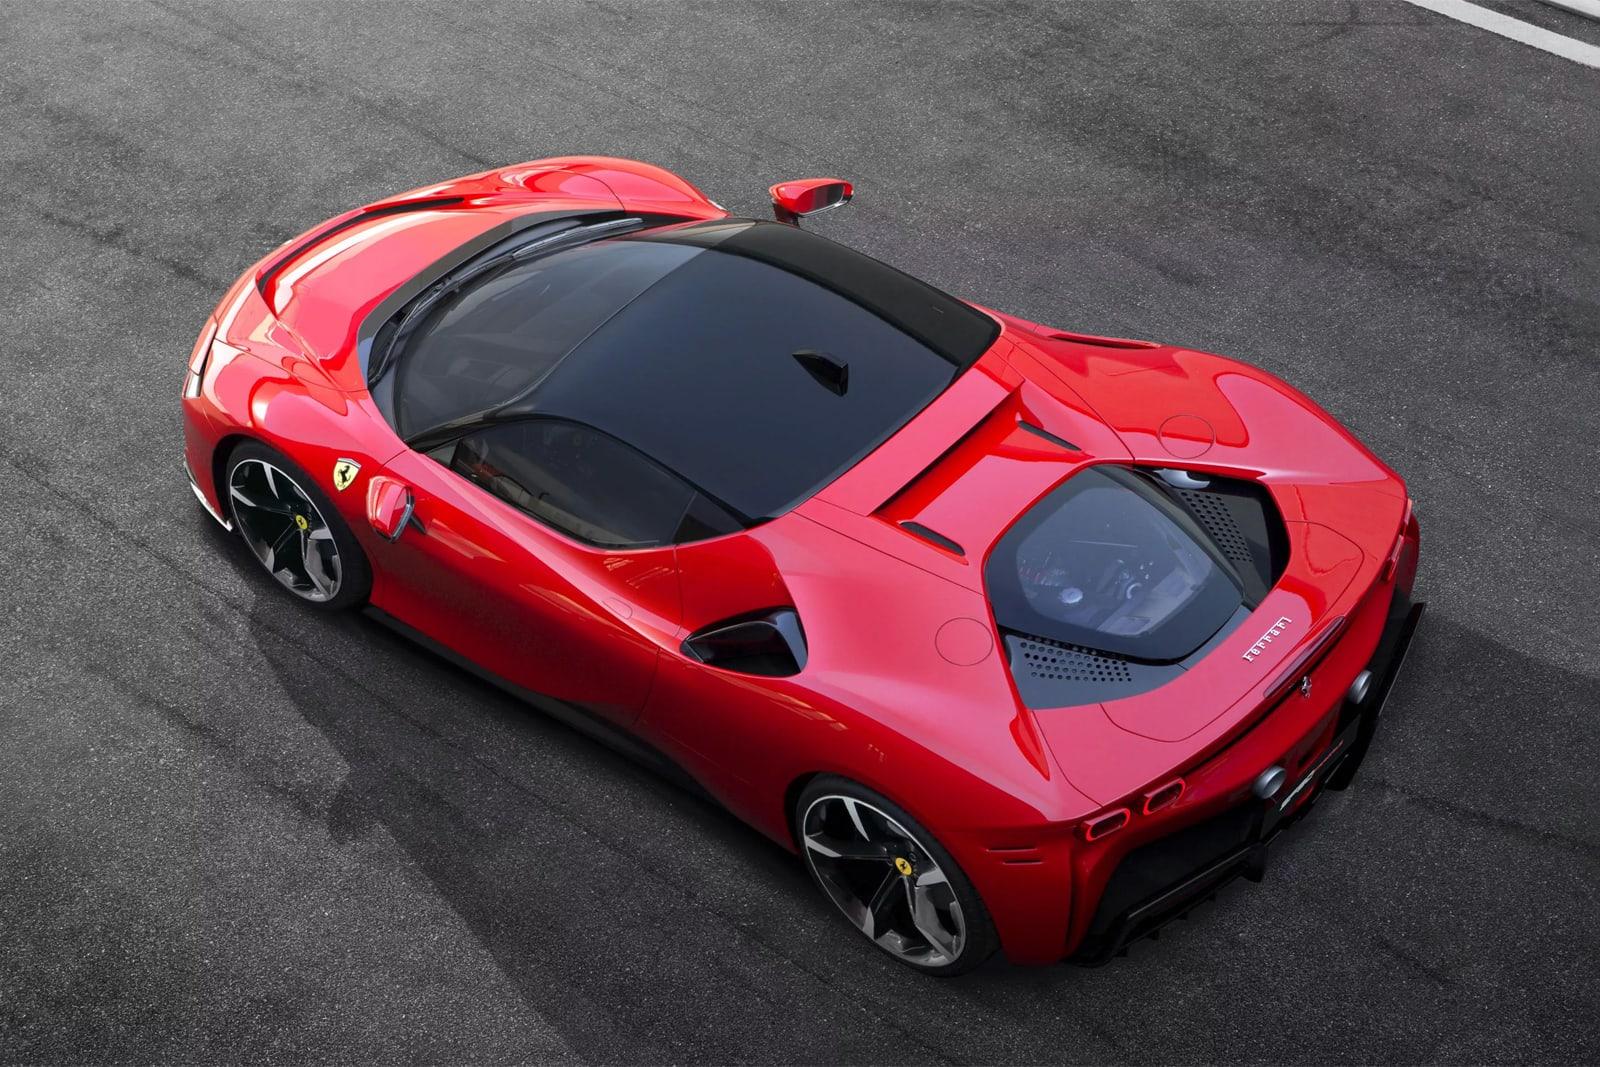 Ferrari cho biết 60% đội hình của hãng sẽ được điện khí hóa vào năm 2026